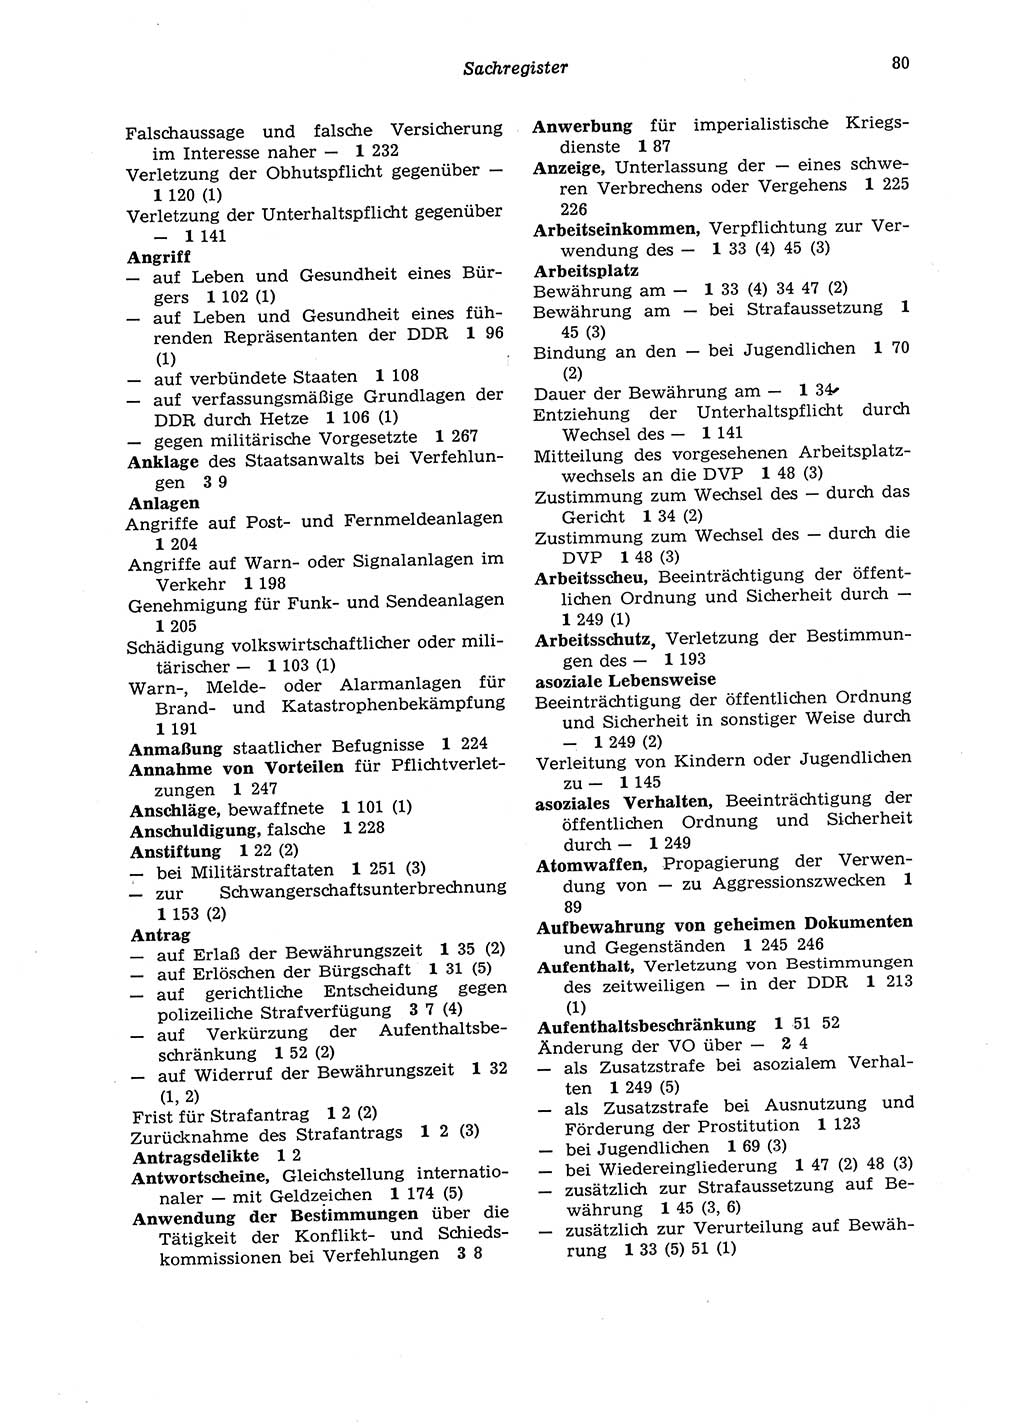 Strafgesetzbuch (StGB) der Deutschen Demokratischen Republik (DDR) 1987, Seite 80 (StGB DDR 1987, S. 80)